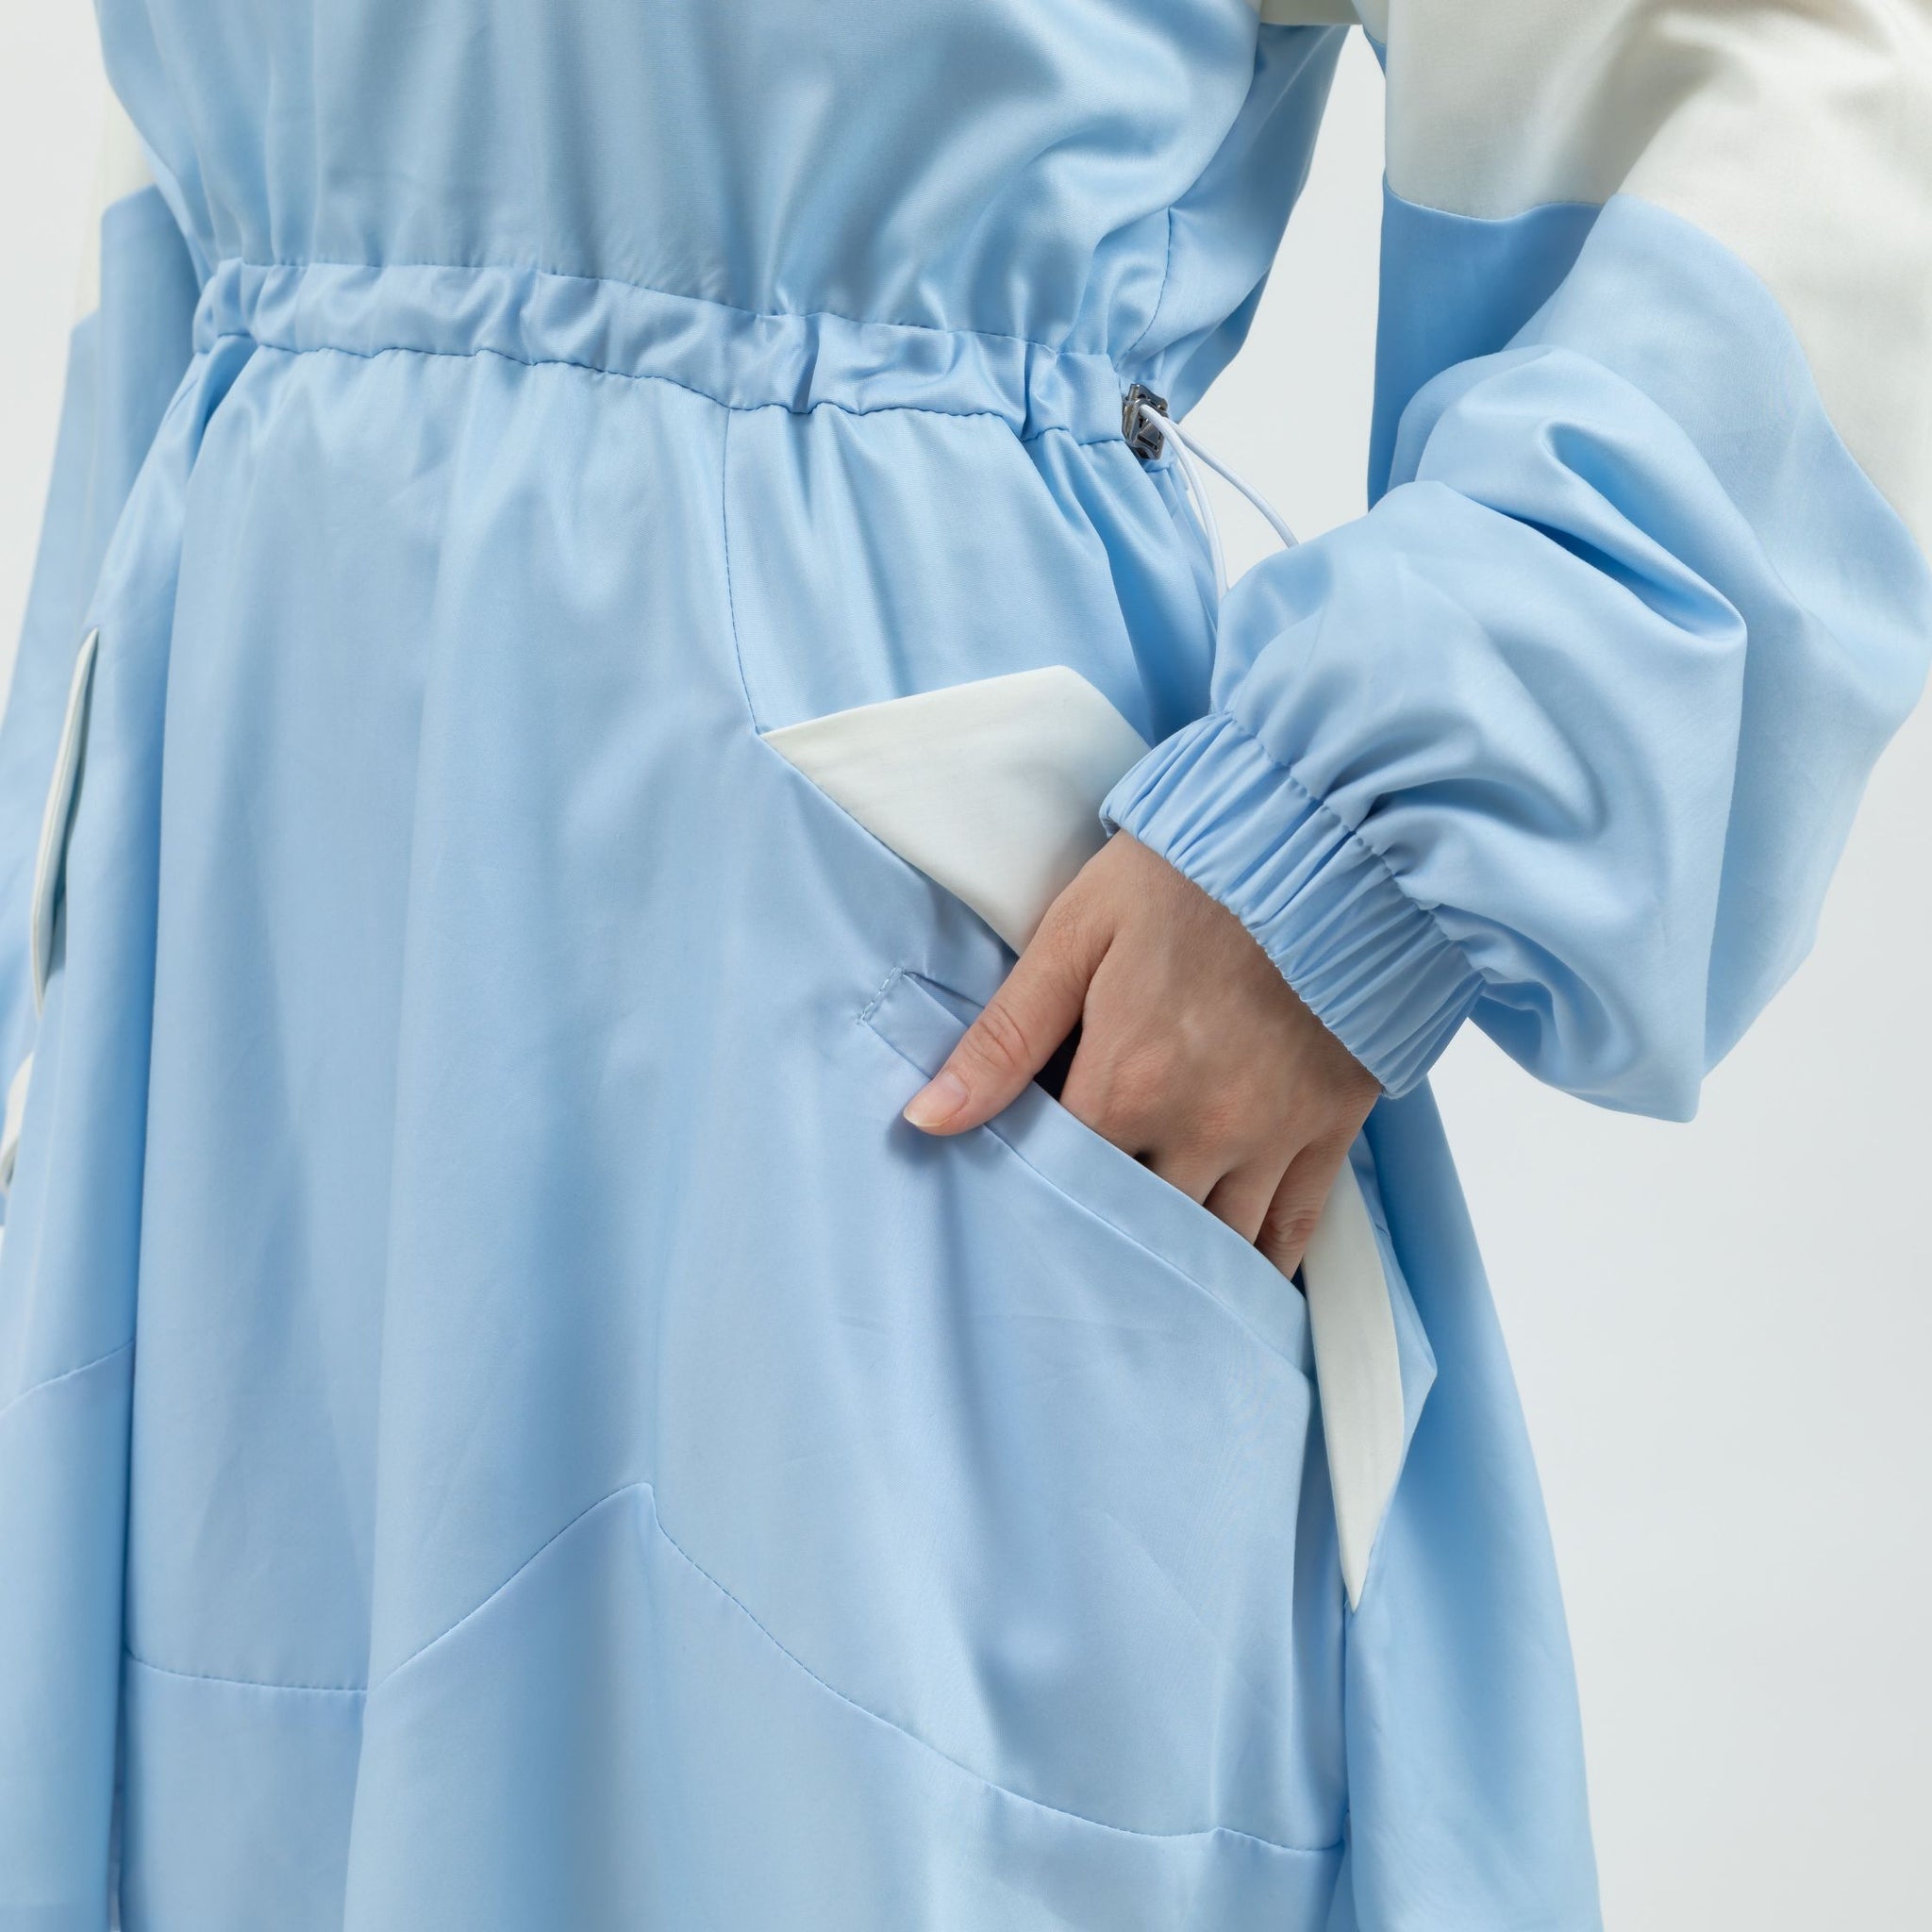 安心シルキーワンピース（ライトブルー）/ Security silky dress (light blue)